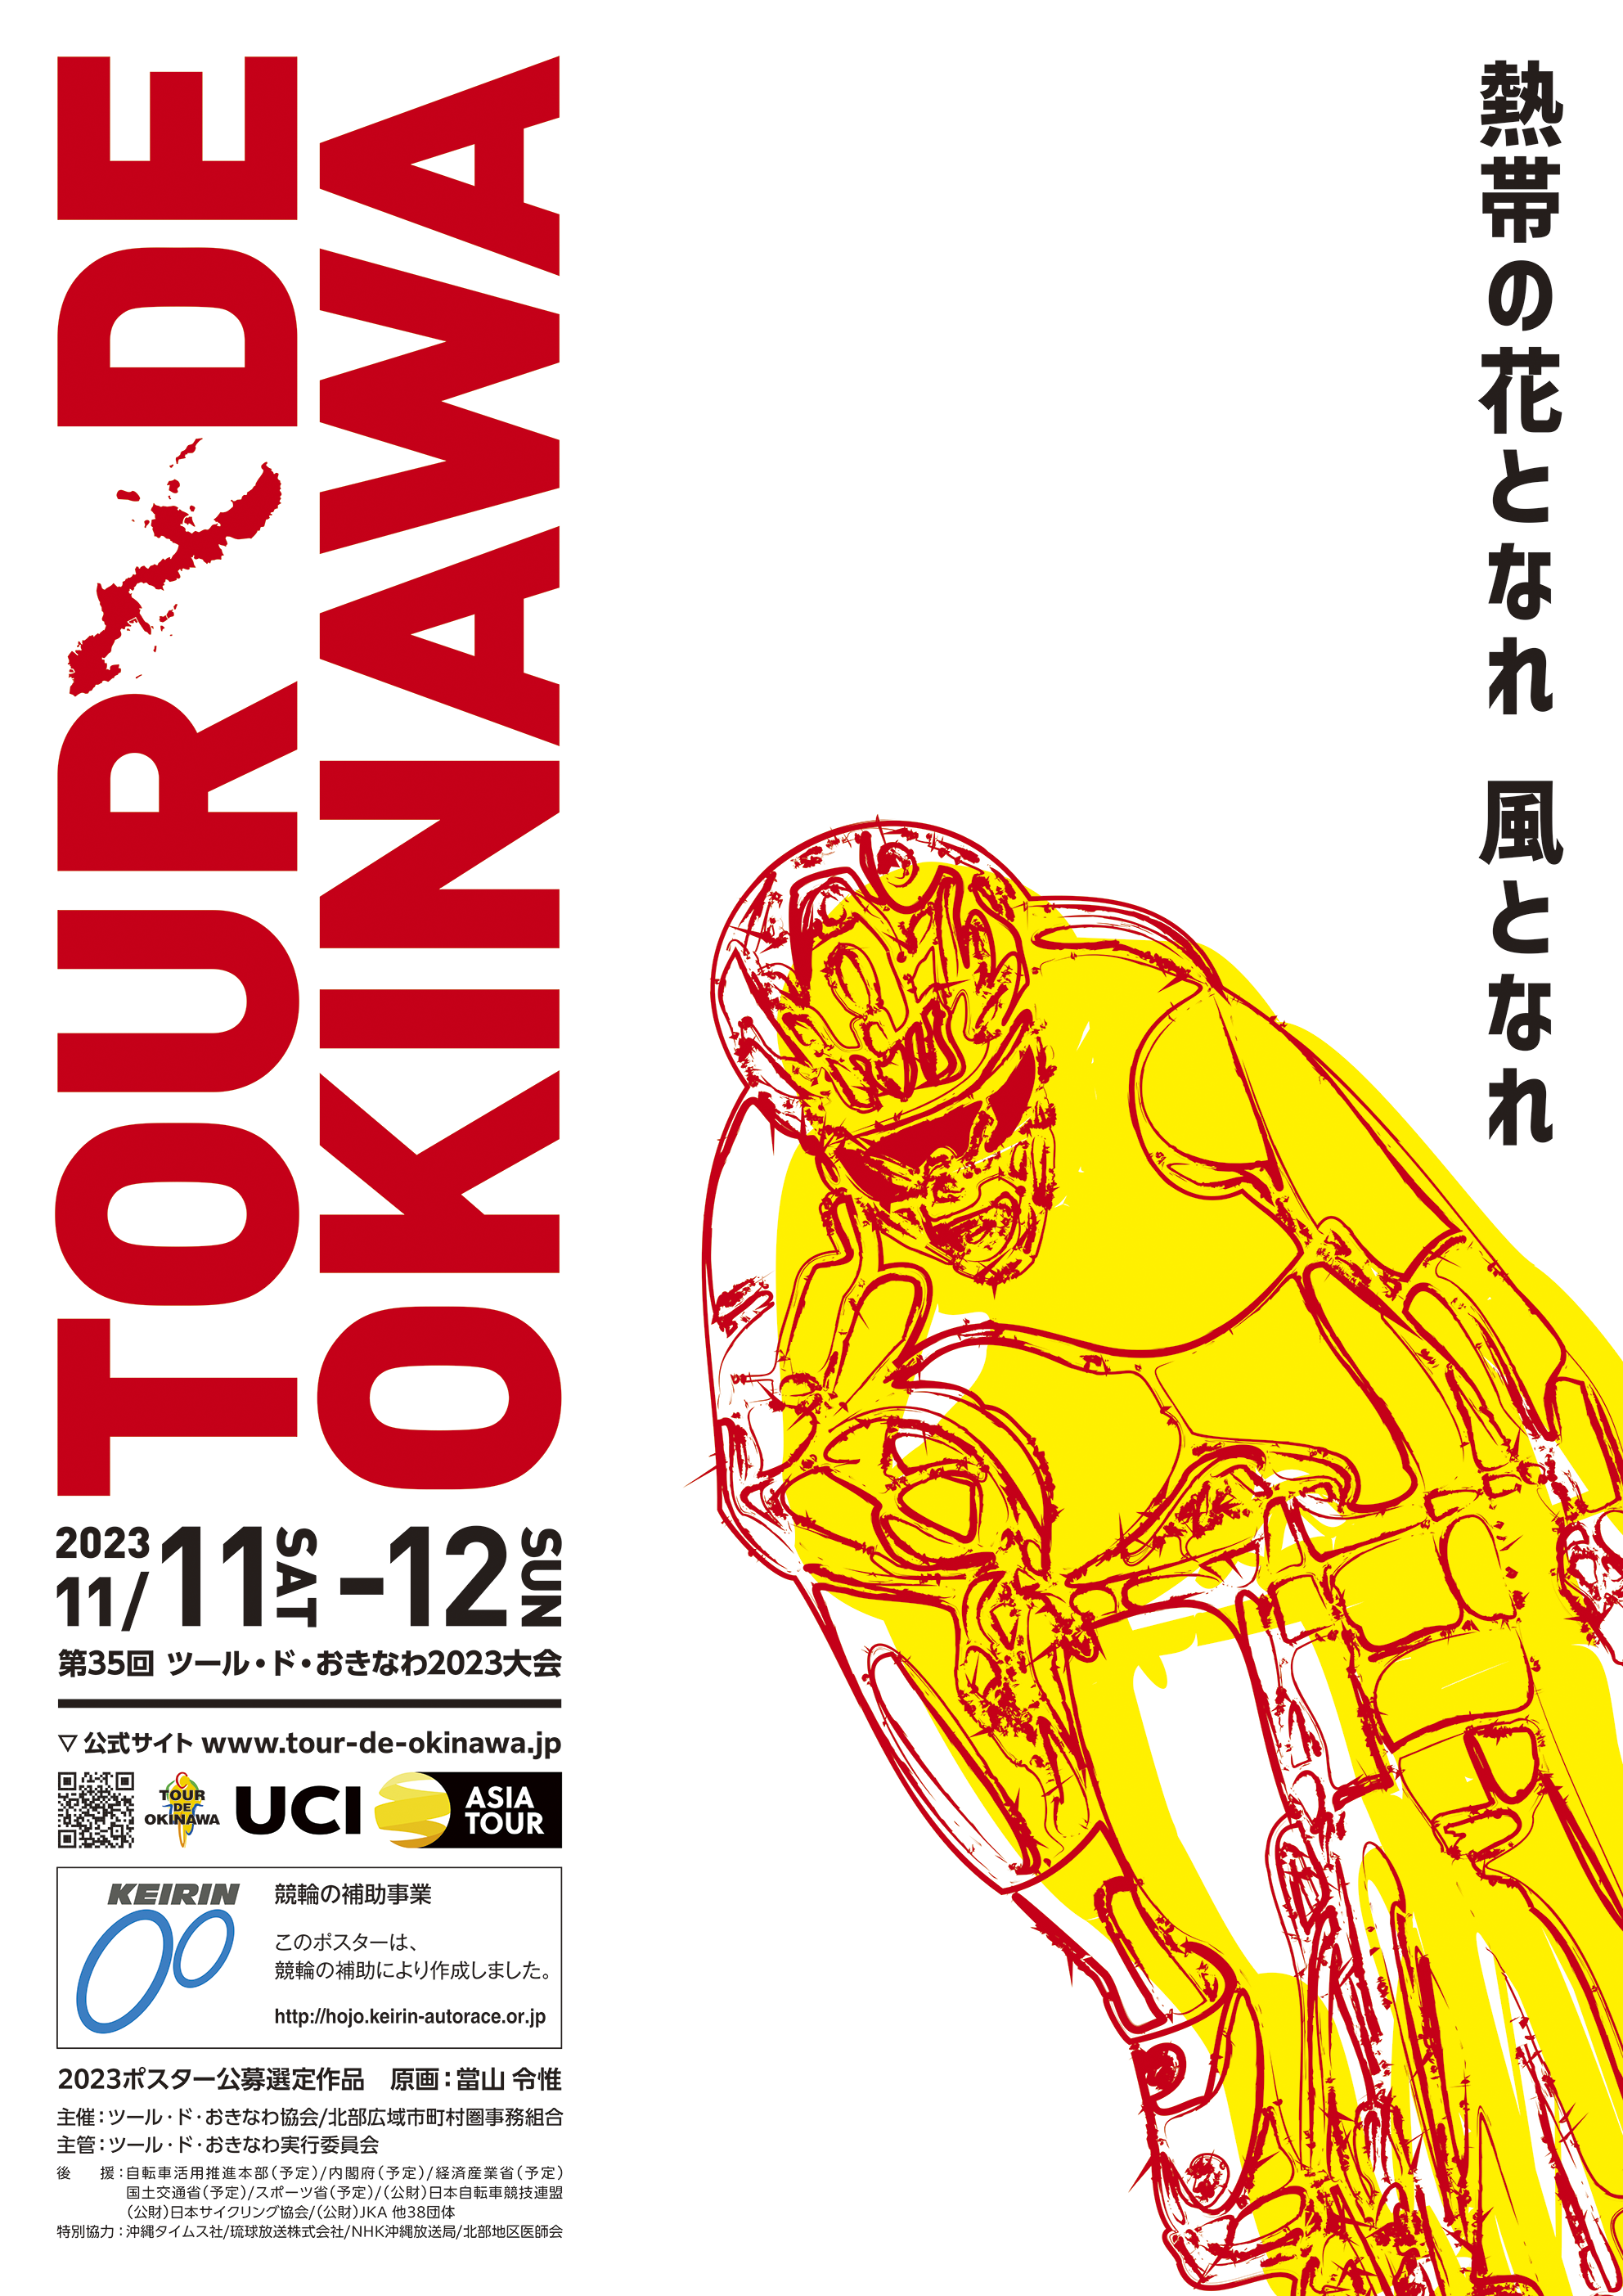 Tour de Okinawa 2022 Home slider 1